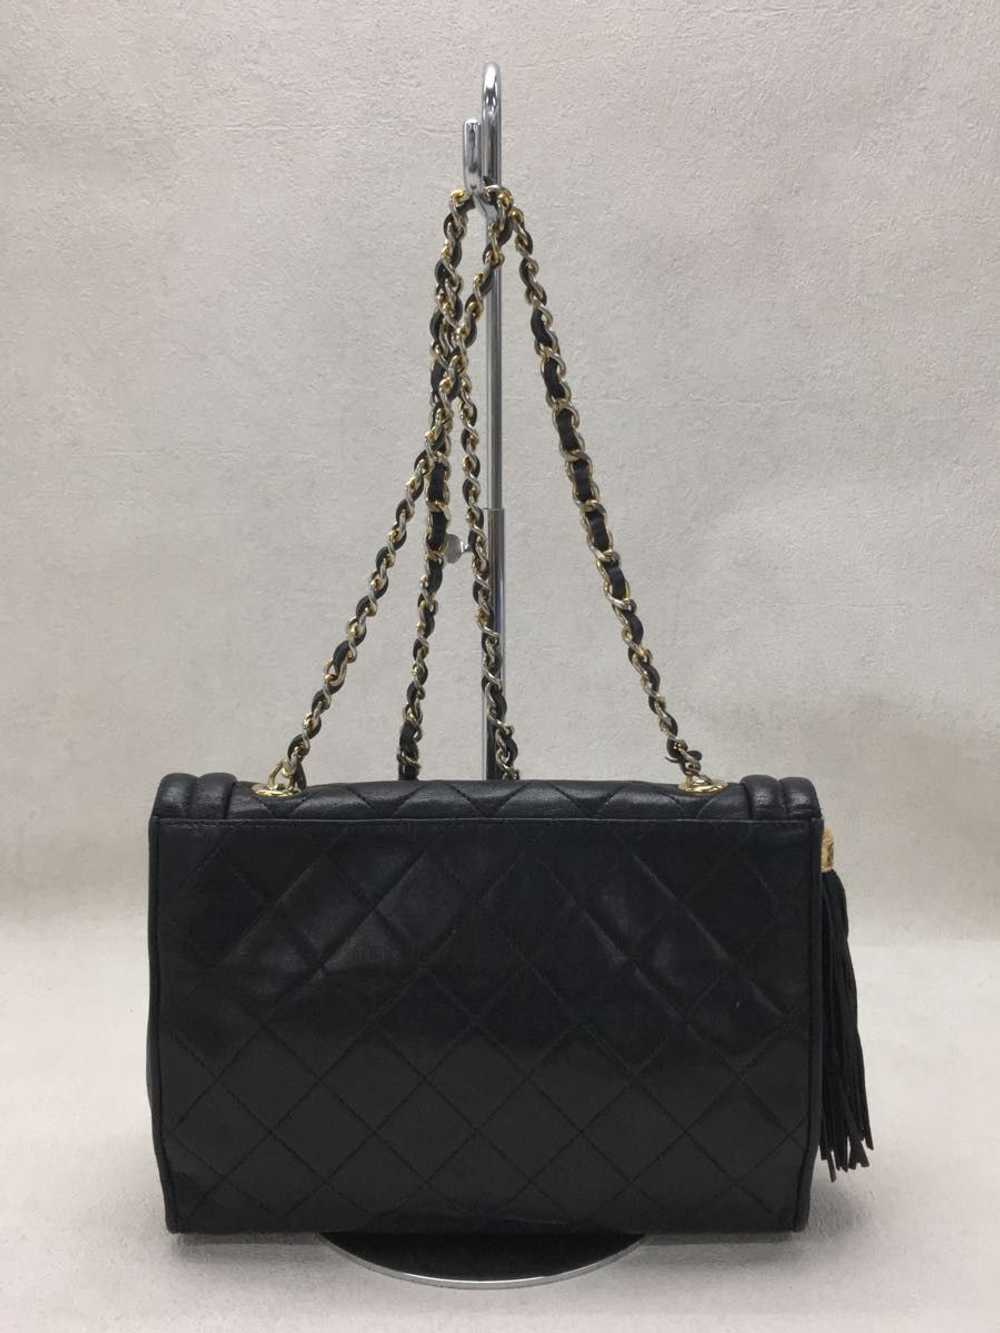 Chanel Chanel Shoulder Bag Leather Black - image 2